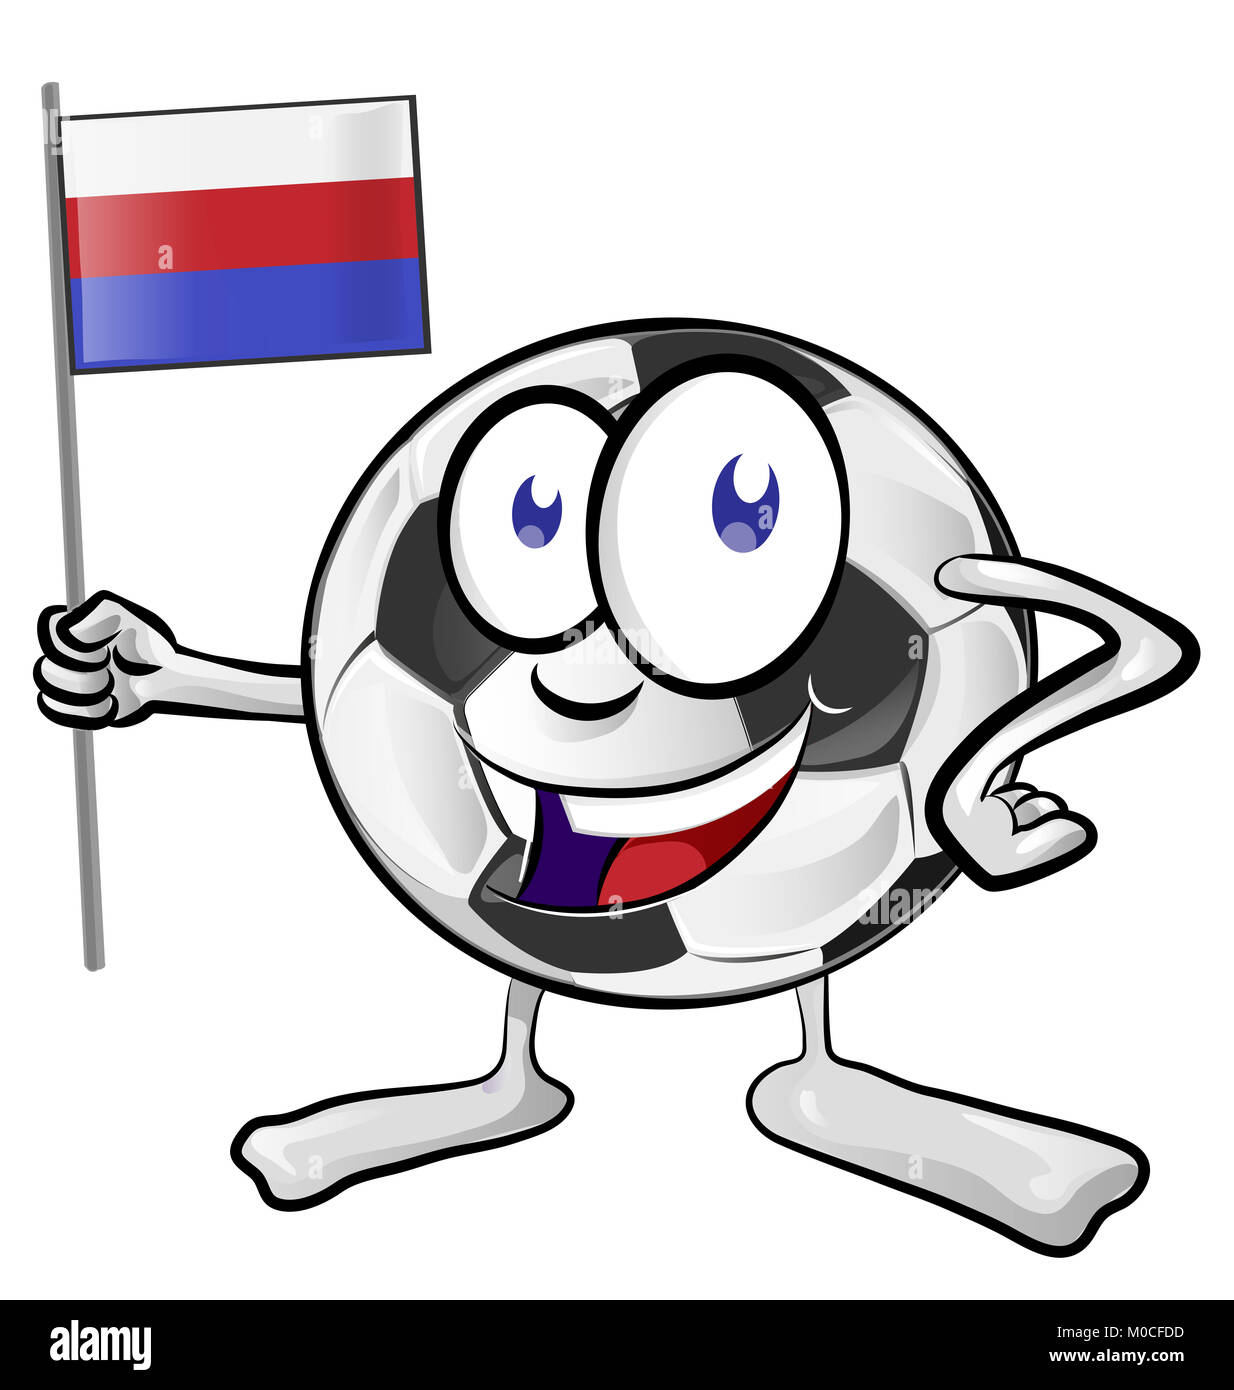 Ballon de soccer cartoon avec drapeau russe Banque D'Images